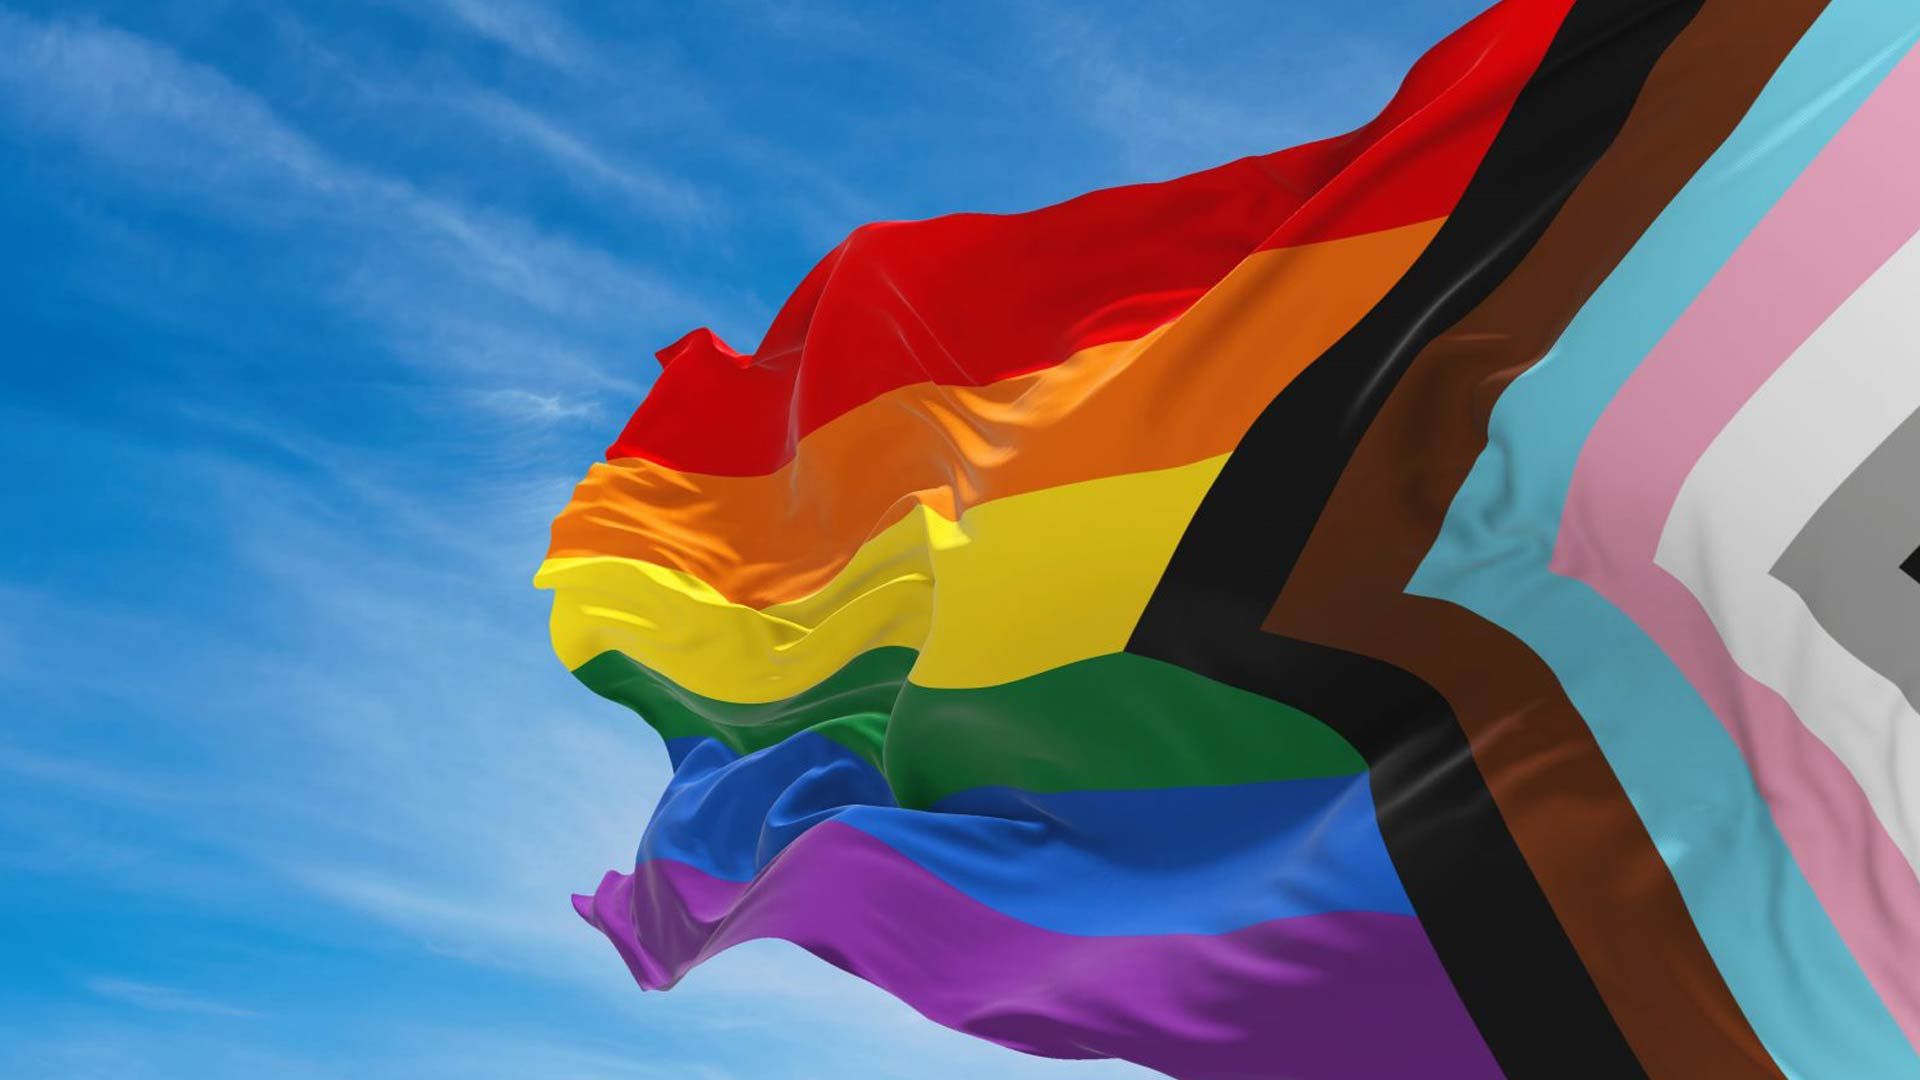 Союзник — это глагол: как участвовать в активном союзничестве с ЛГБТК+